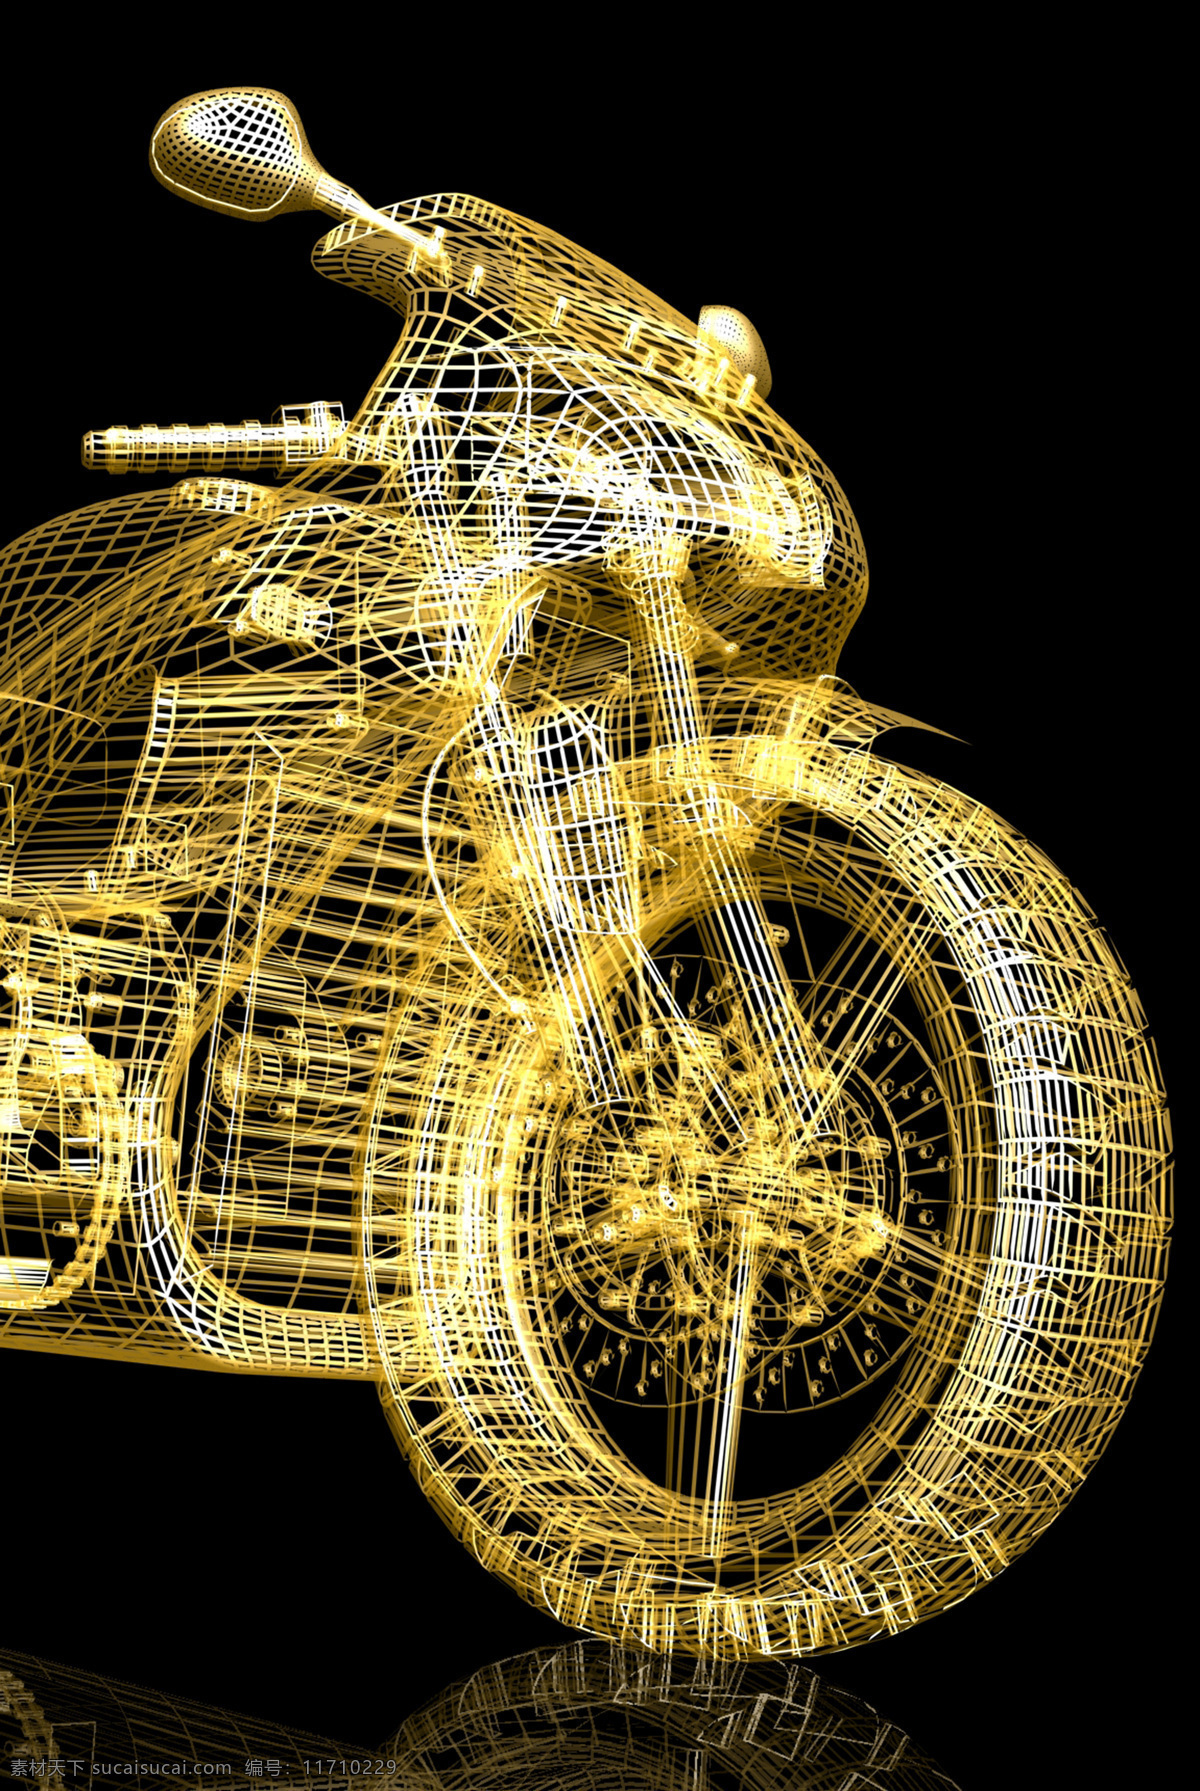 黄色 科技 摩托车 3d摩托车 立体摩托车 赛车 动感摩托车 机车 交通工具 其他类别 现代科技